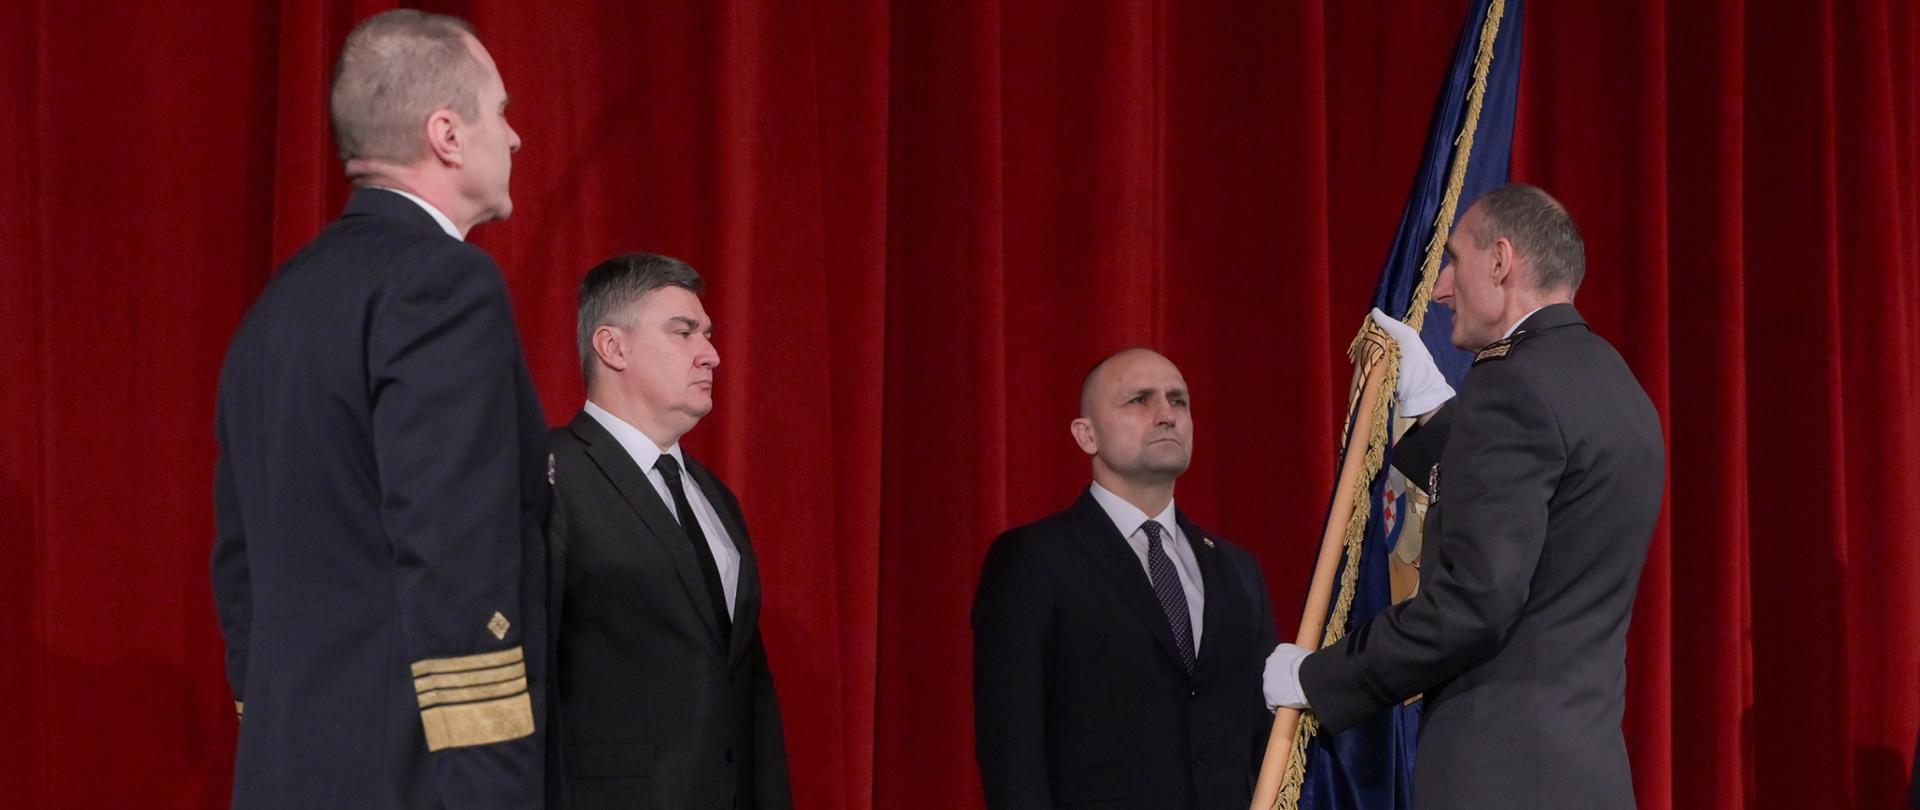 Veleposlanik P. Czerwiński sudjelovao je na svečanosti primopredaje dužnosti načelnika Glavnog stožera Oružanih snaga Republike Hrvatske T. Kundidu